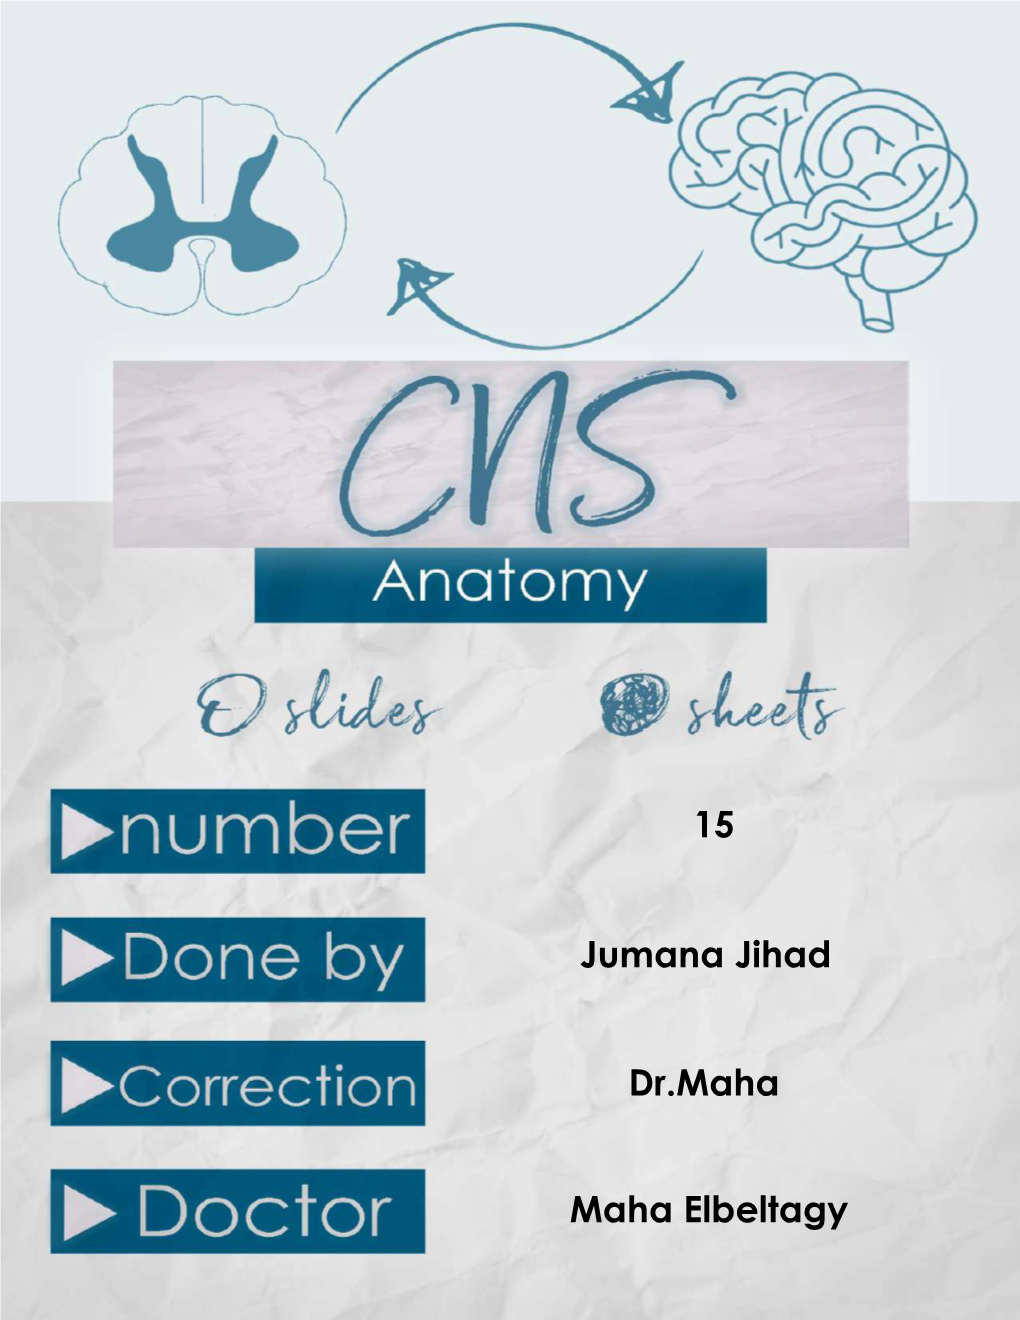 15 Jumana Jihad Dr.Maha Maha Elbeltagy